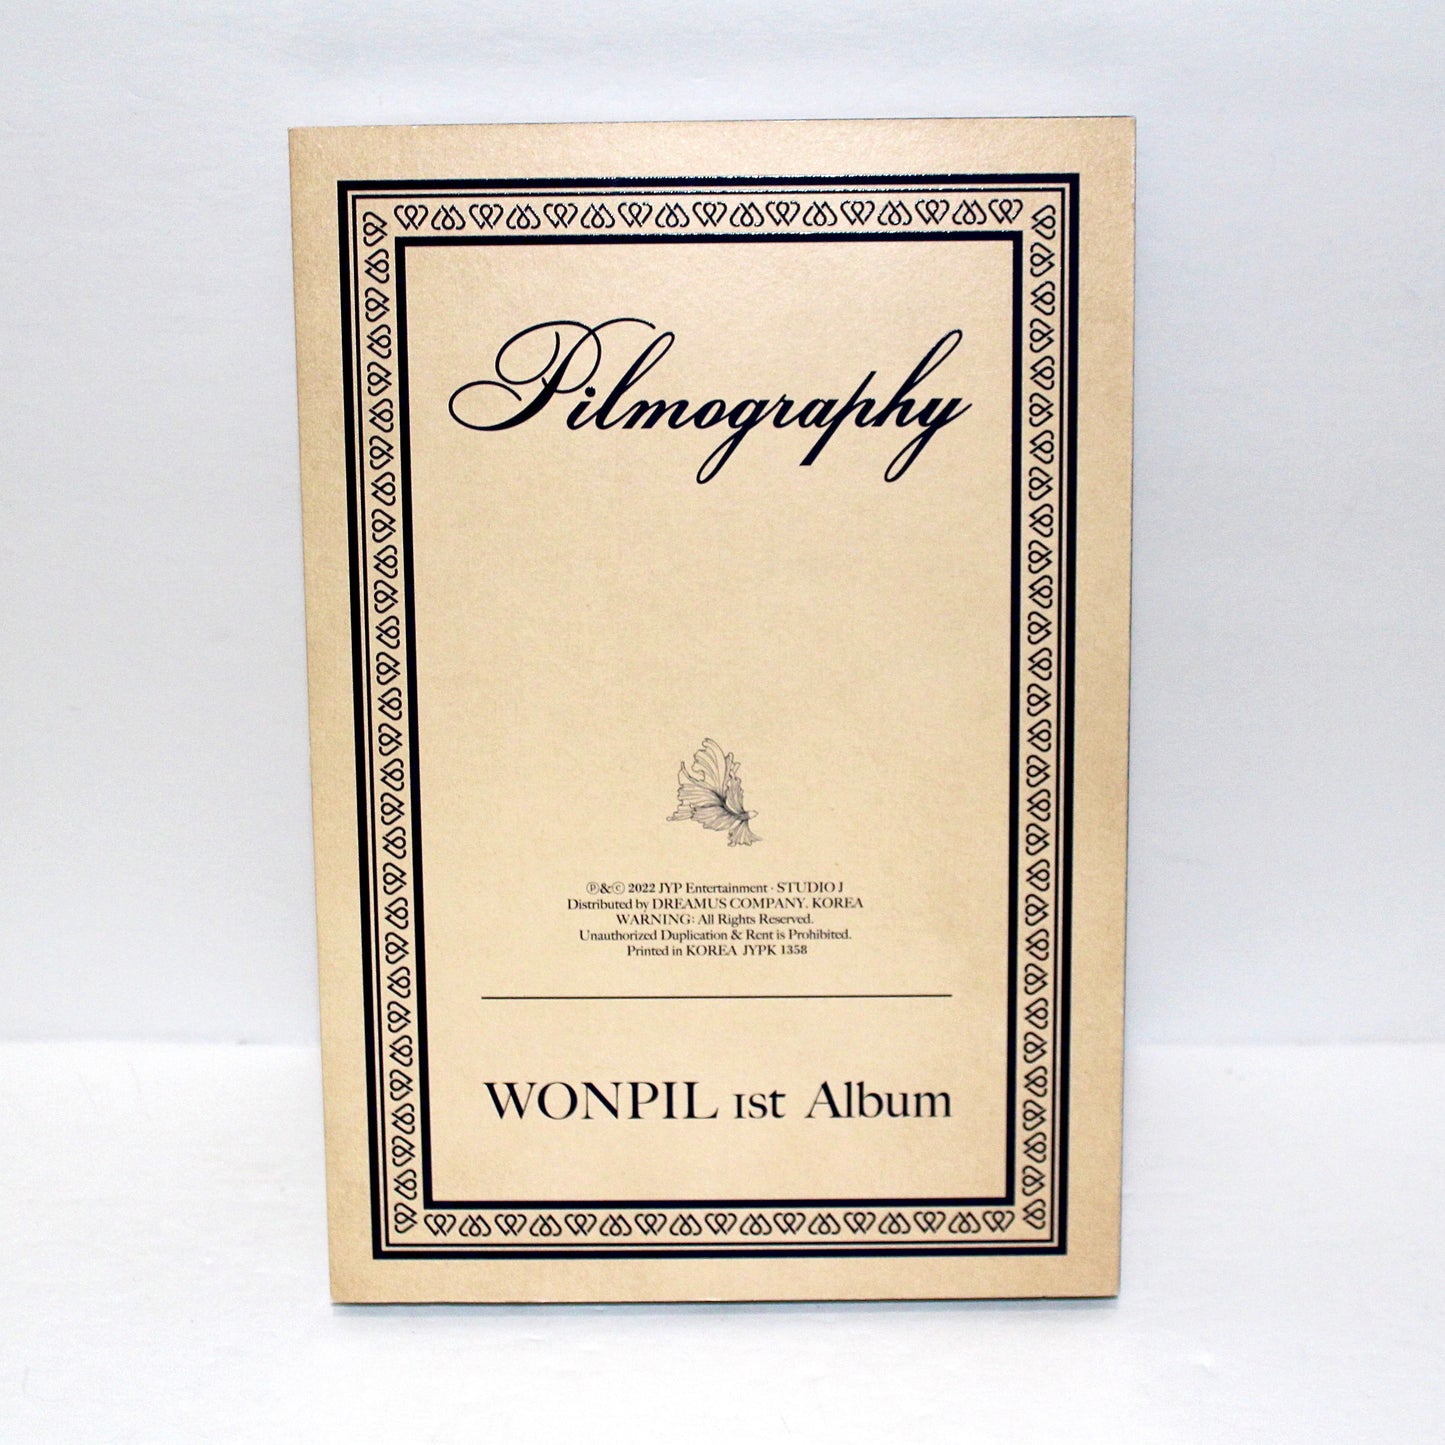 WONPIL 1st Album: Pilmography | Part 2 Ver.